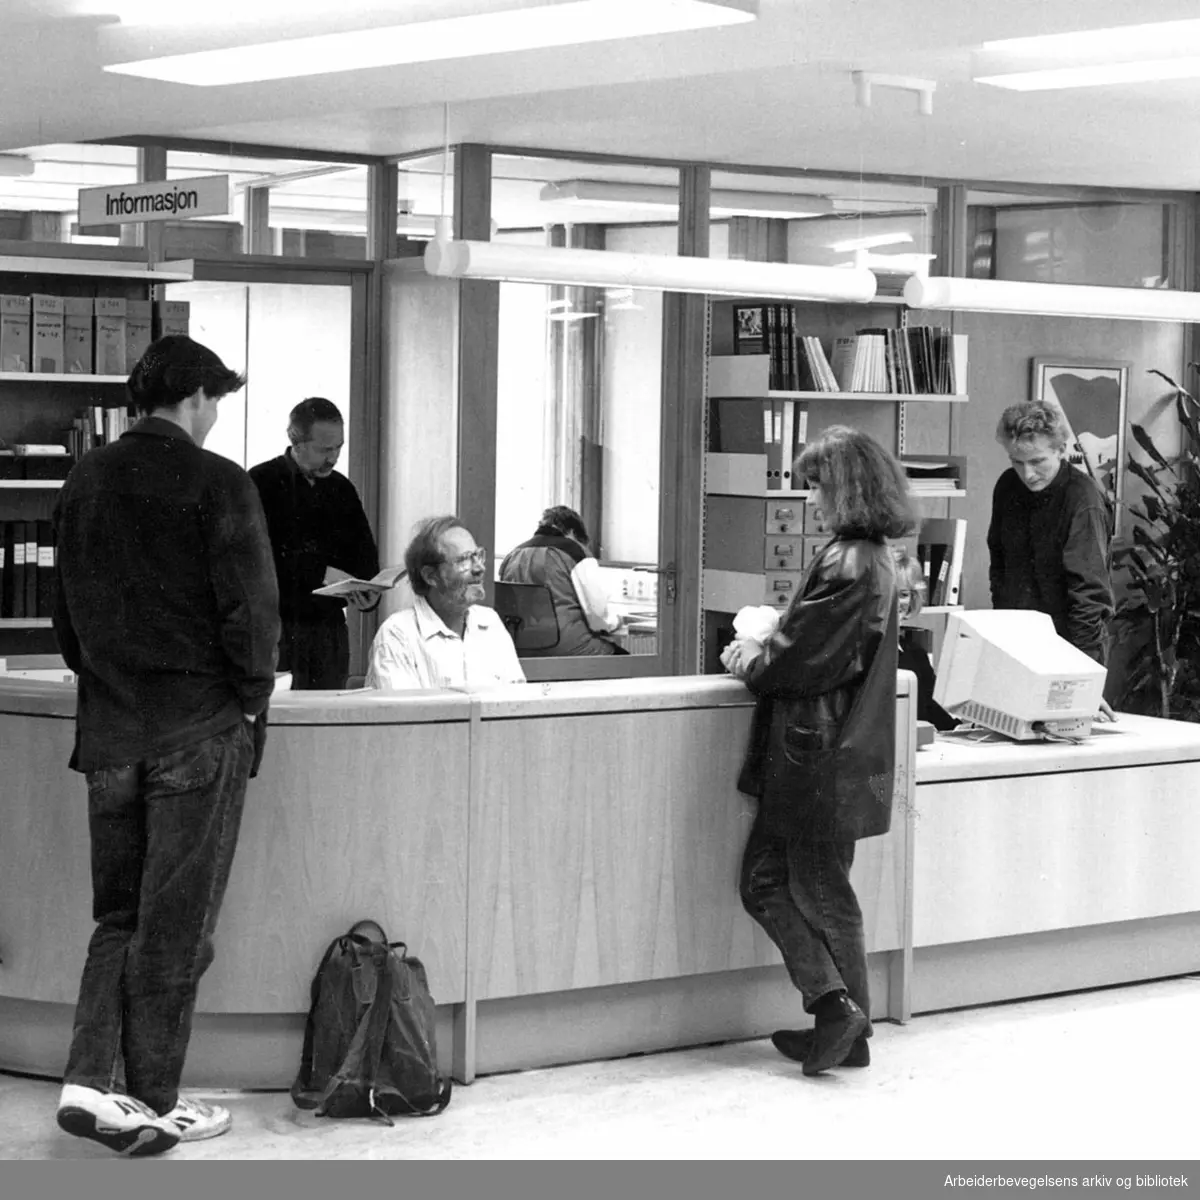 Arbeiderbevegelsens arkiv og bibliotek. Bak skranken: Terje Halvorsen (i døra), Kåre Auale (sittende), Lill-Ann Jensen (på kontoret) og Lars Langengen (til høyre). 1992